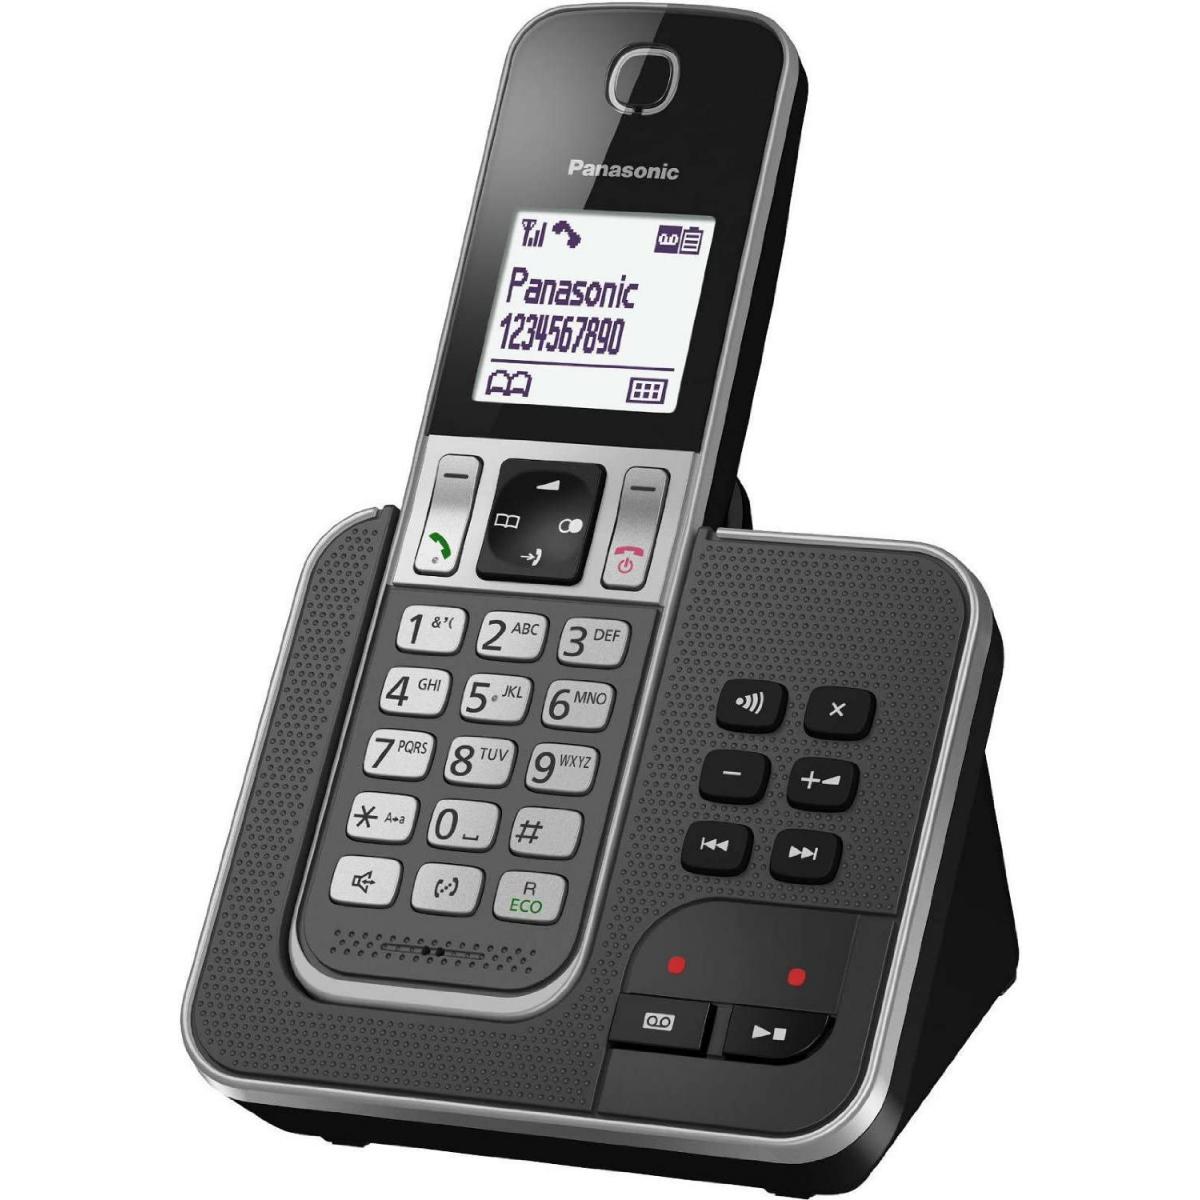 Panasonic - Rasage Electrique - telephone sans Fil avec répondeur et écran gris noir - Téléphone fixe-répondeur